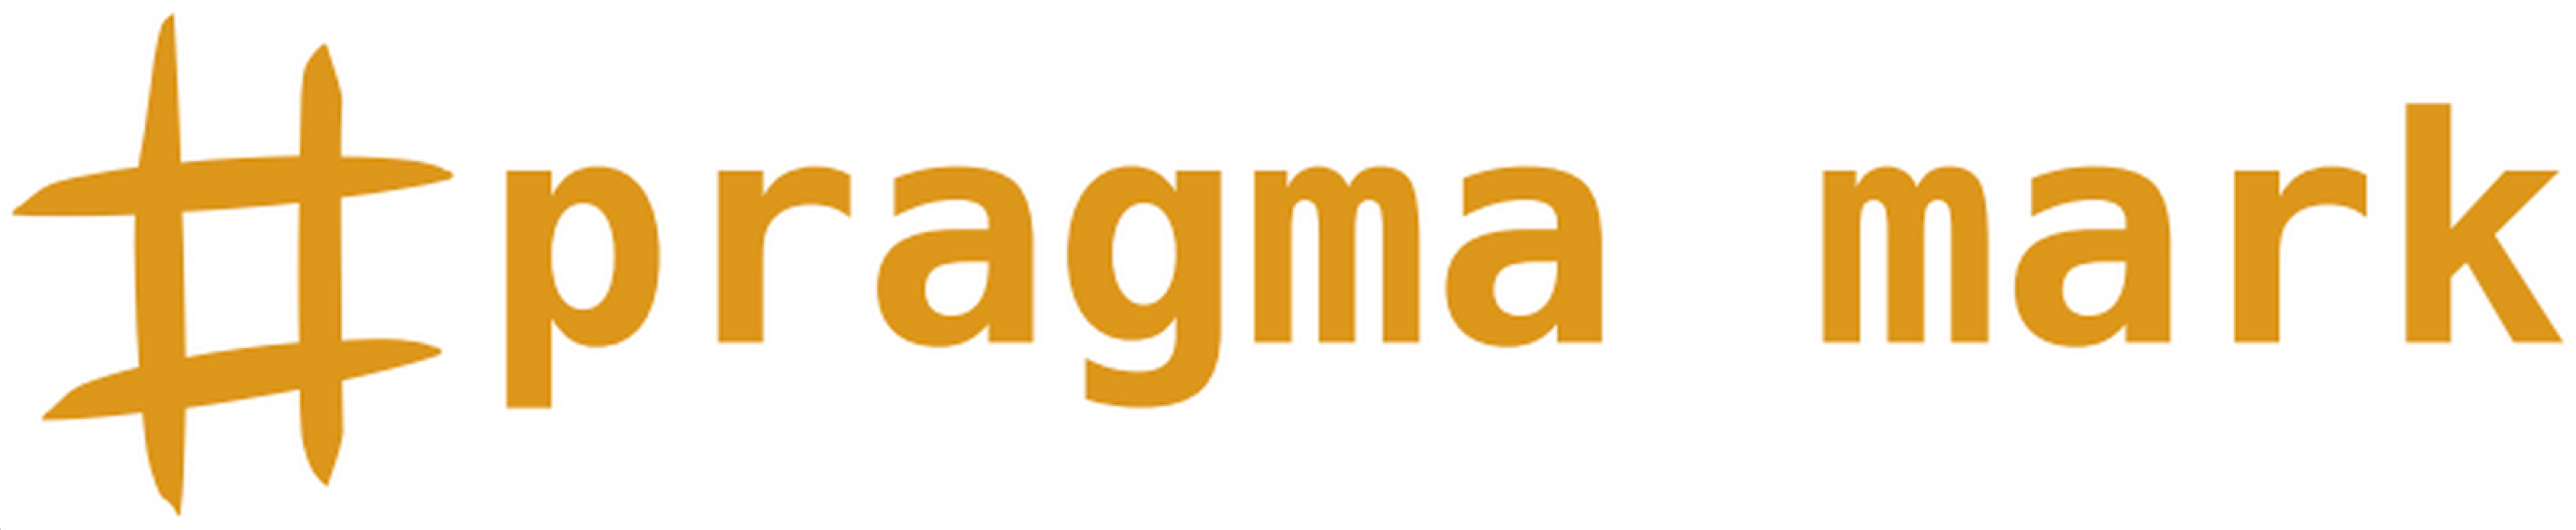 Pragmamark logo